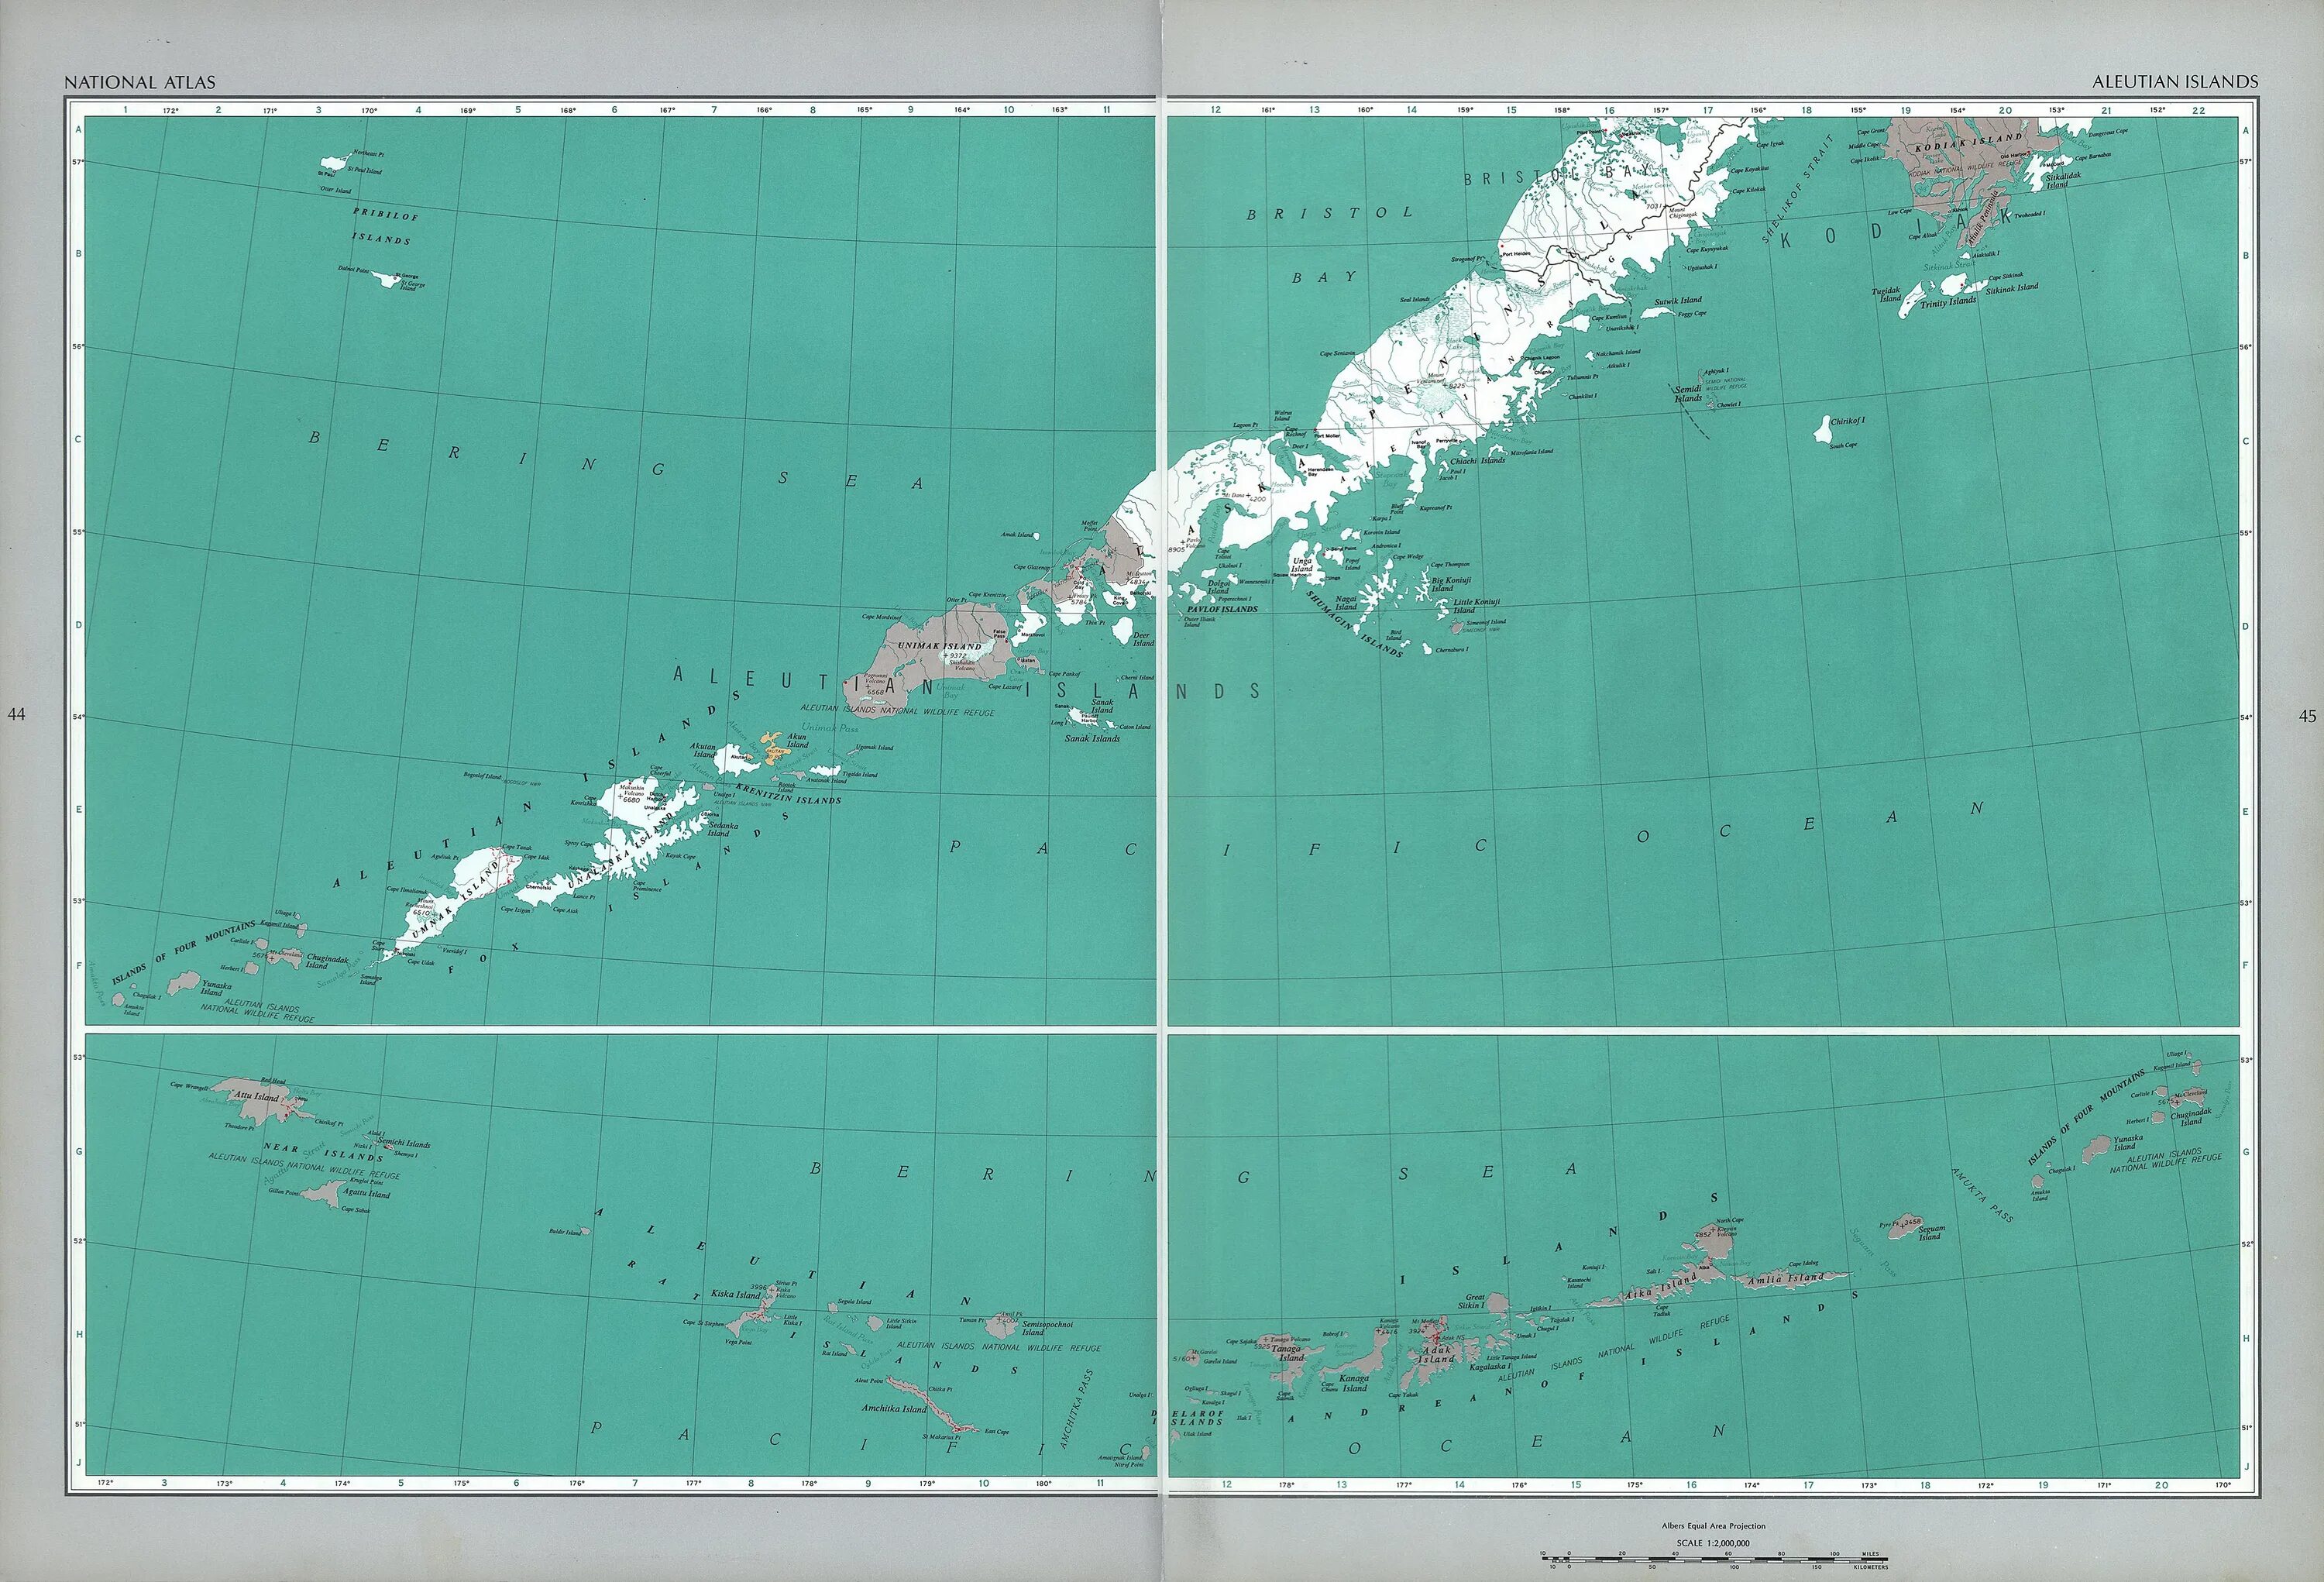 Где алеутские острова. Алеутские острова на карте. Аляска и Алеутские острова на карте. Алеутские острова на карте Америки. Алеутские и Курильские острова на карте.